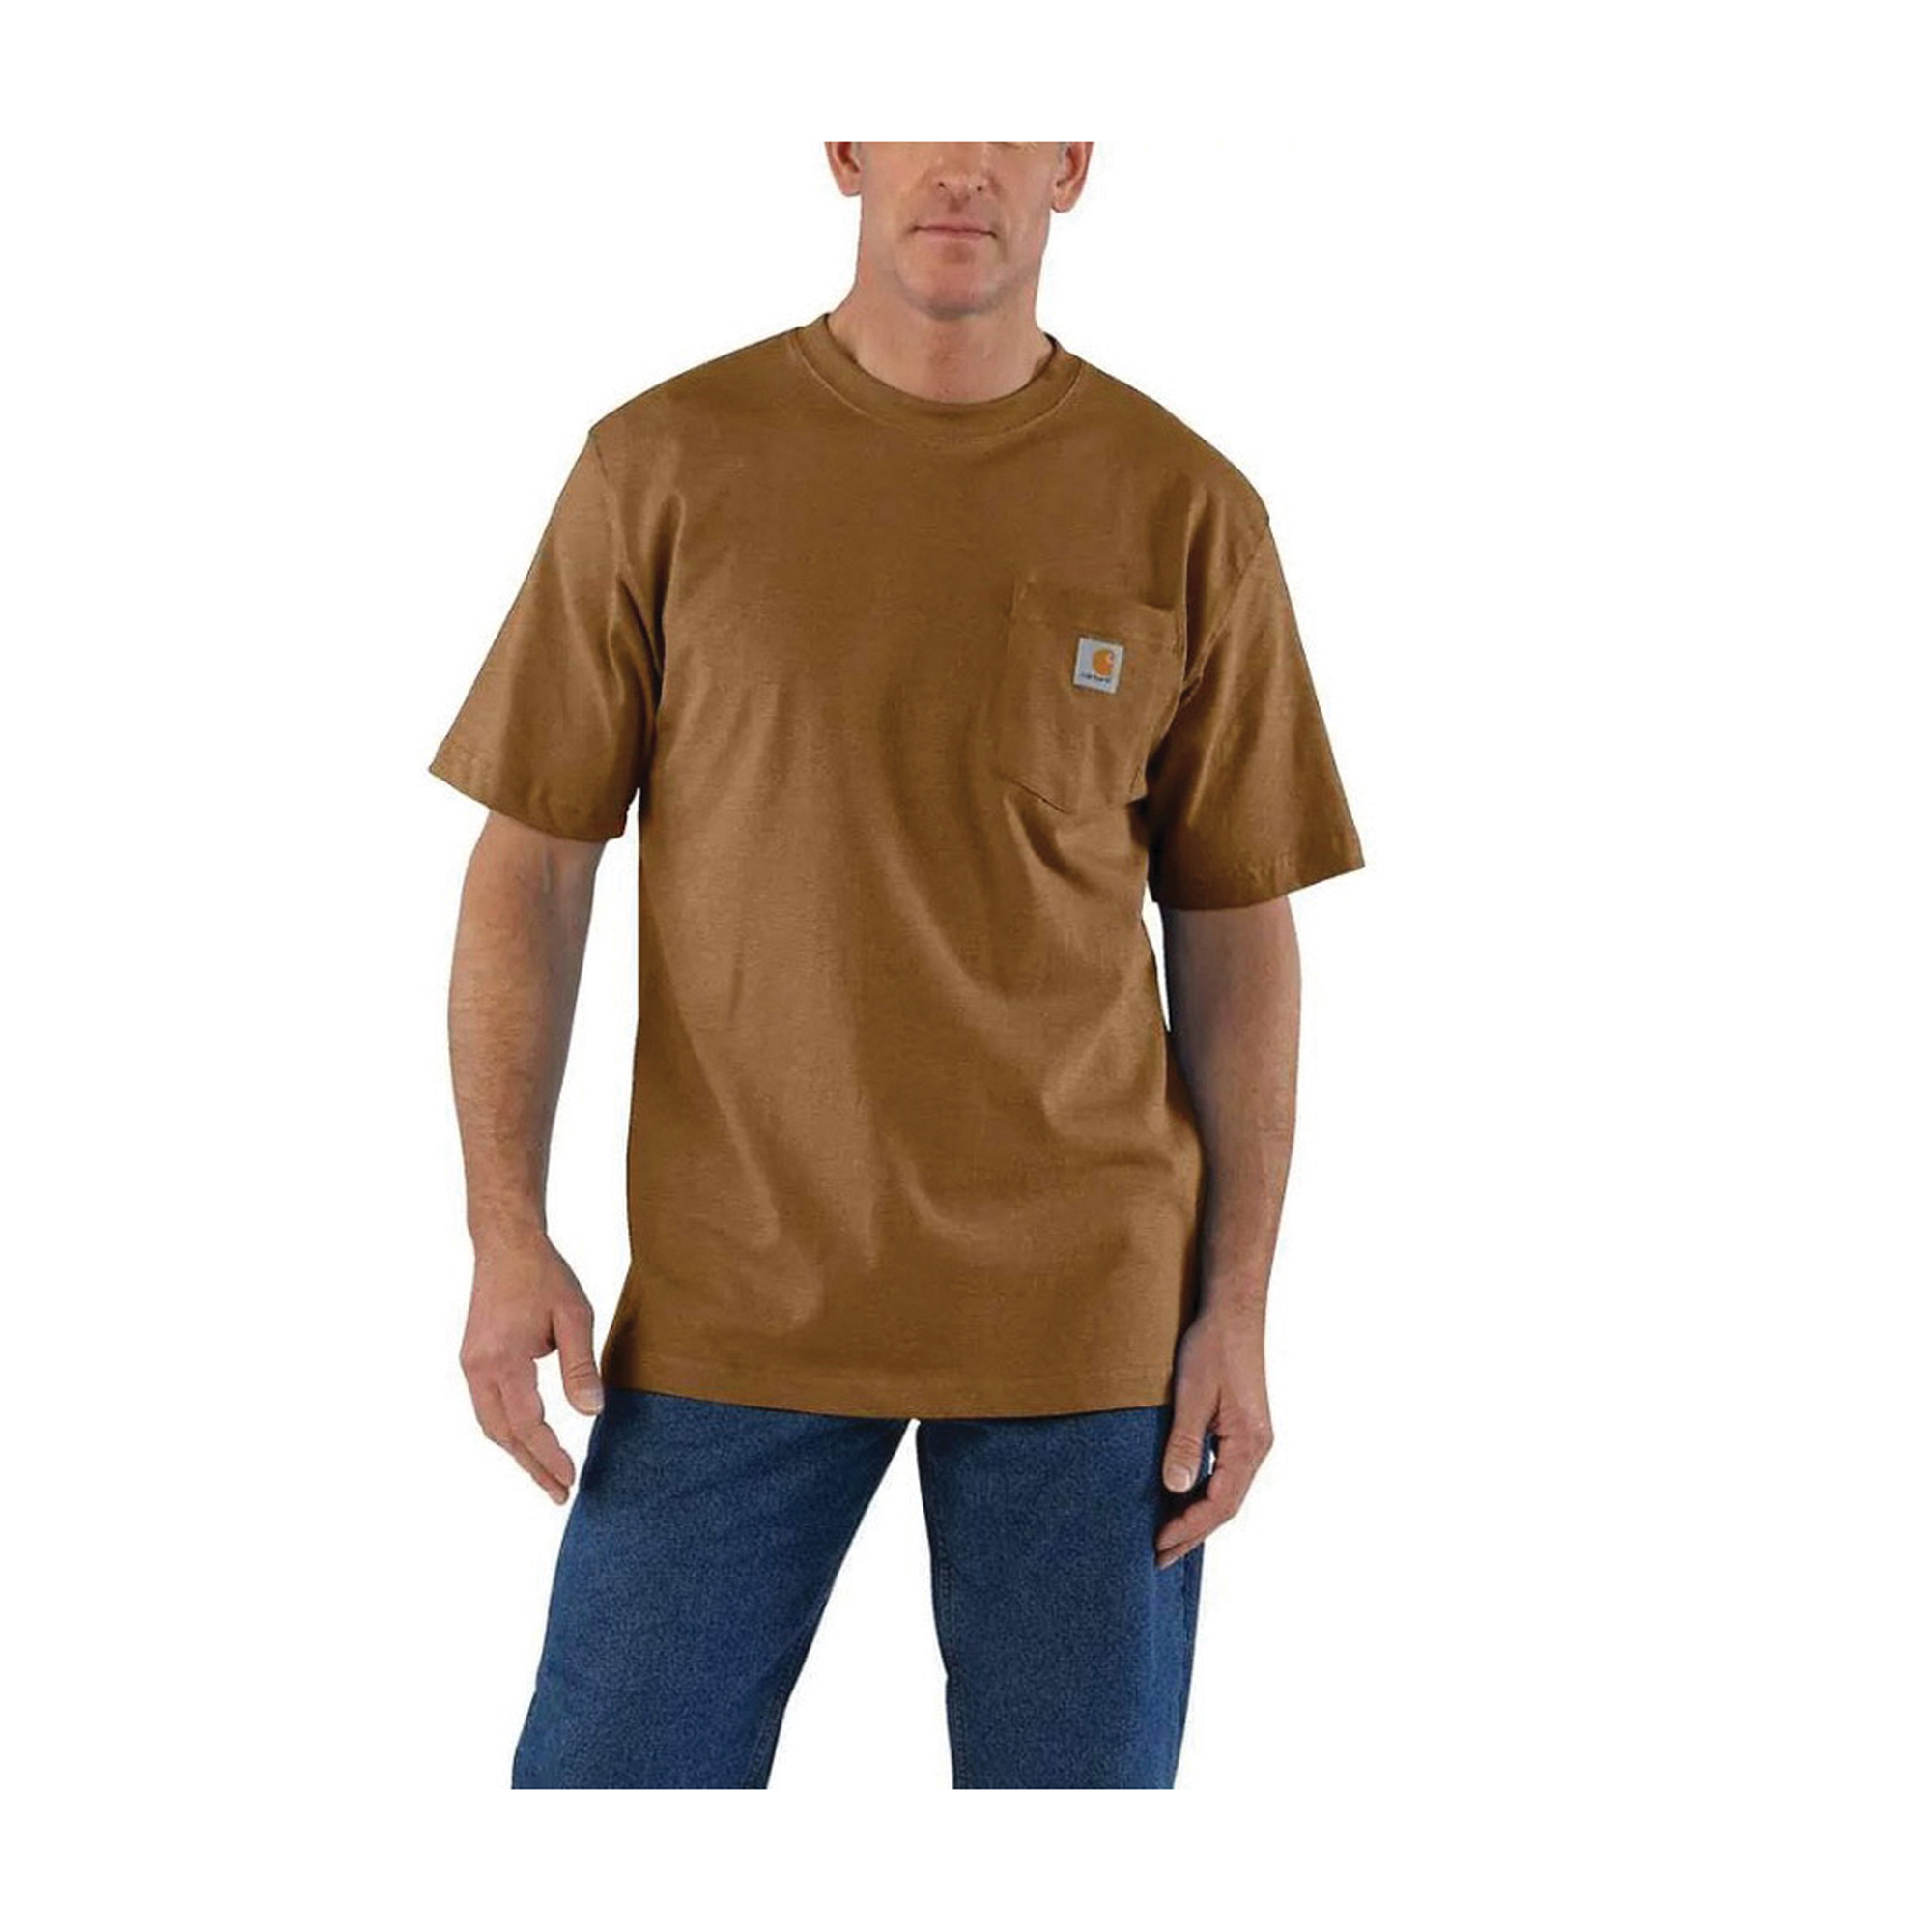 Carhartt Men's Medium Regular Powder Blue Nep Heavyweight Short Sleeve Pocket T-Shirt, Loose Fit